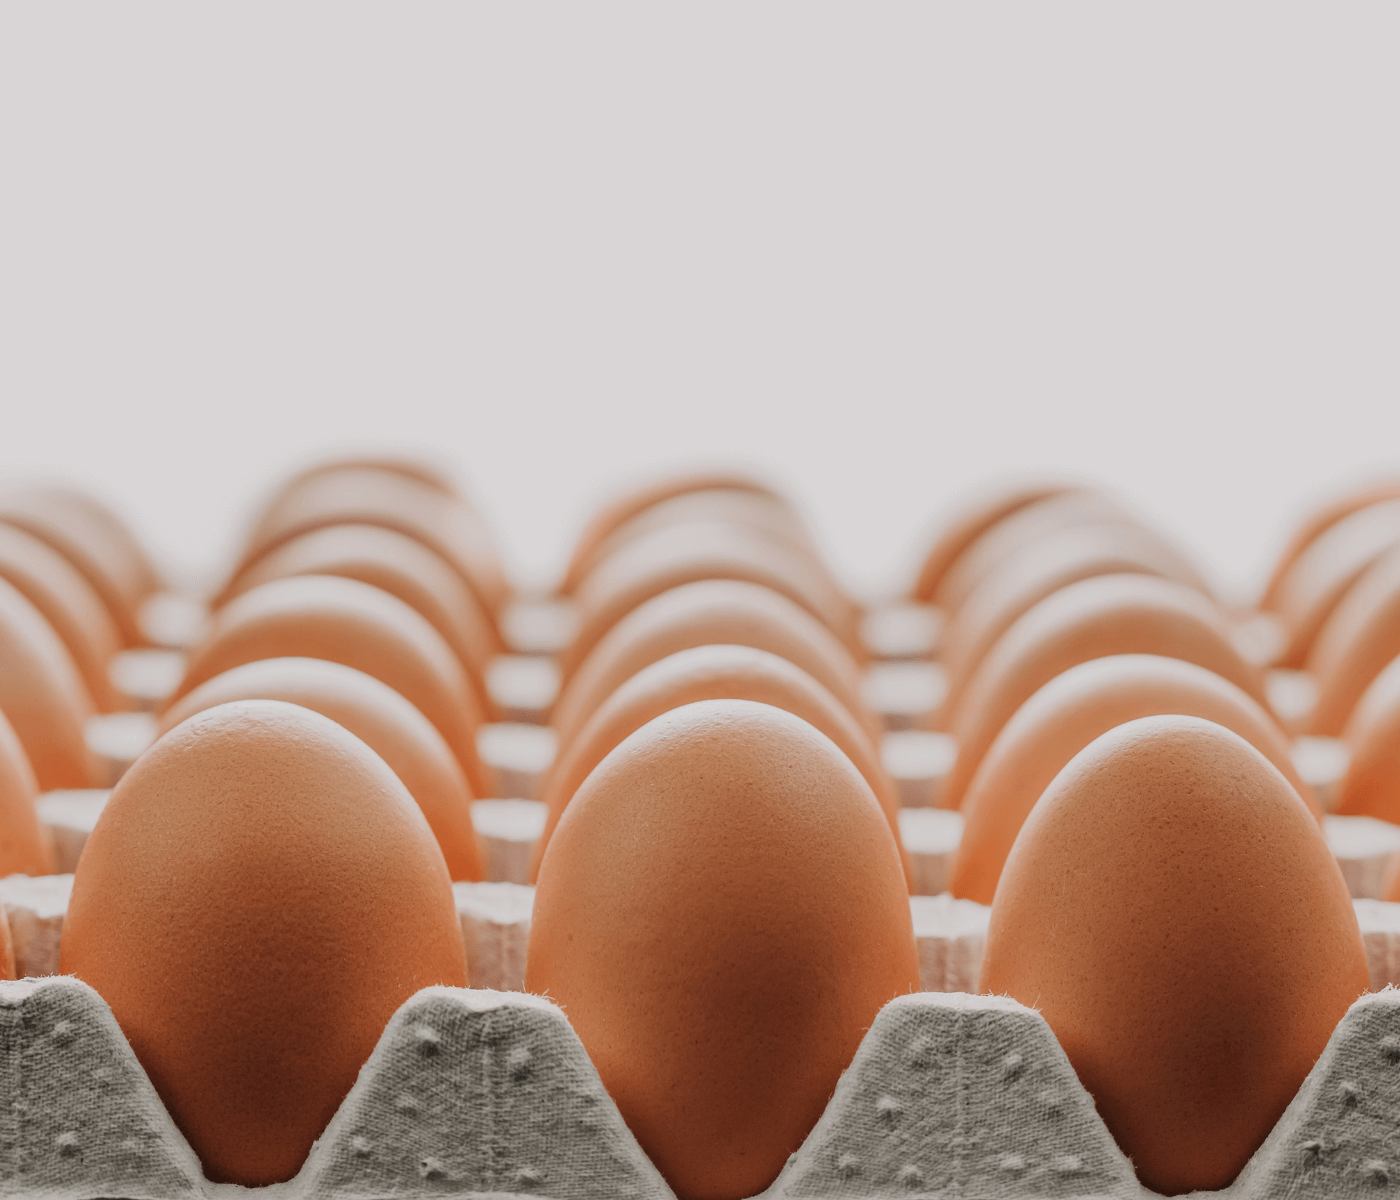 Receita de exportações de ovos cresce 26,6% em outubro